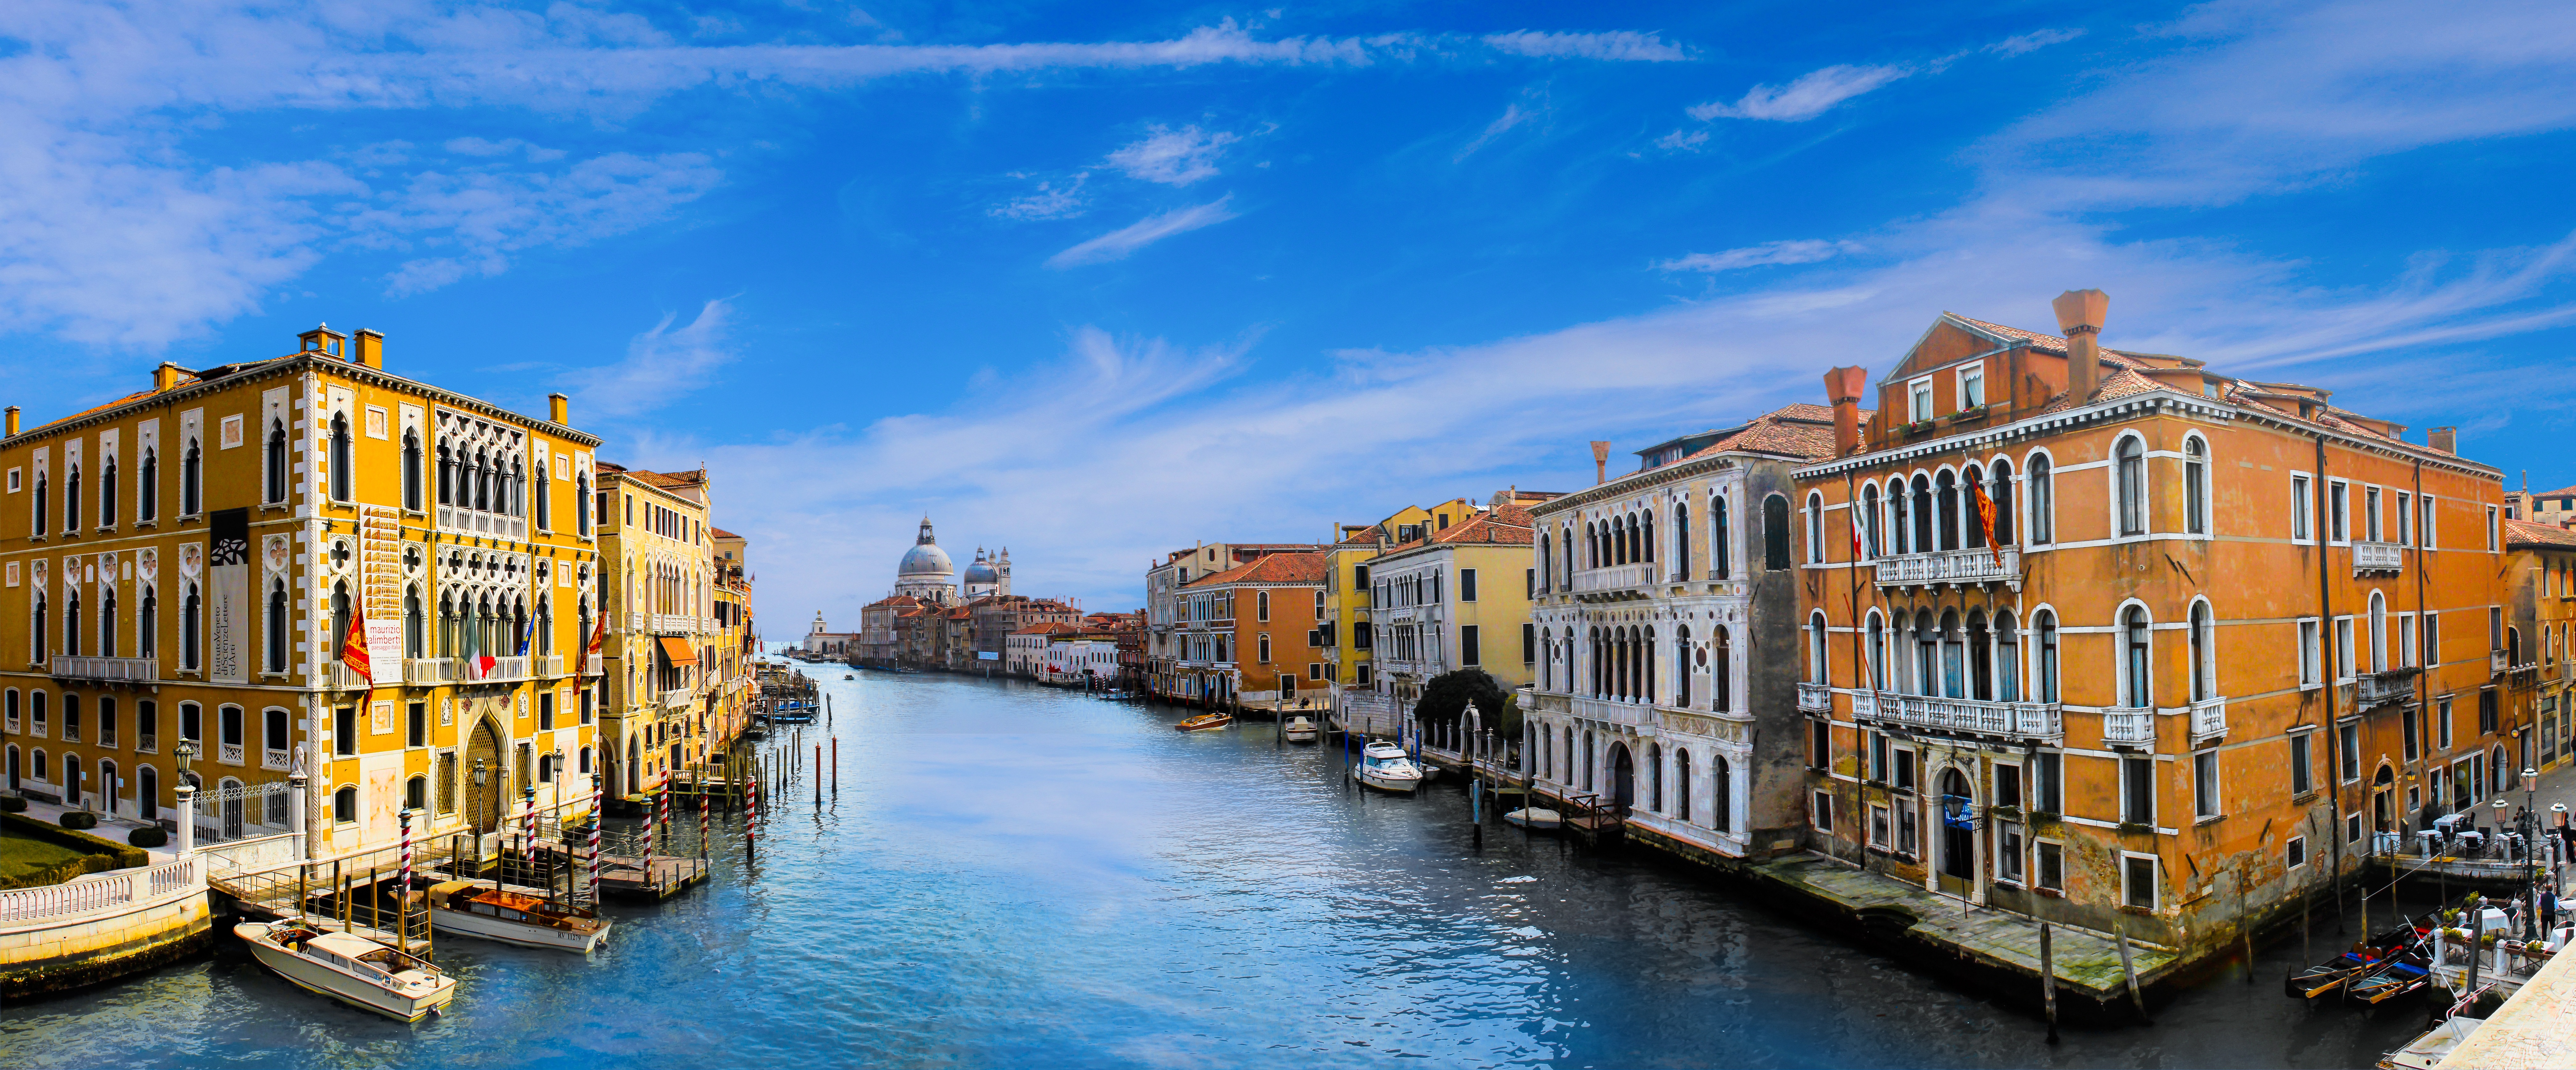 Обои Венеция Италия Гранд-канал в Венеции на рабочий стол